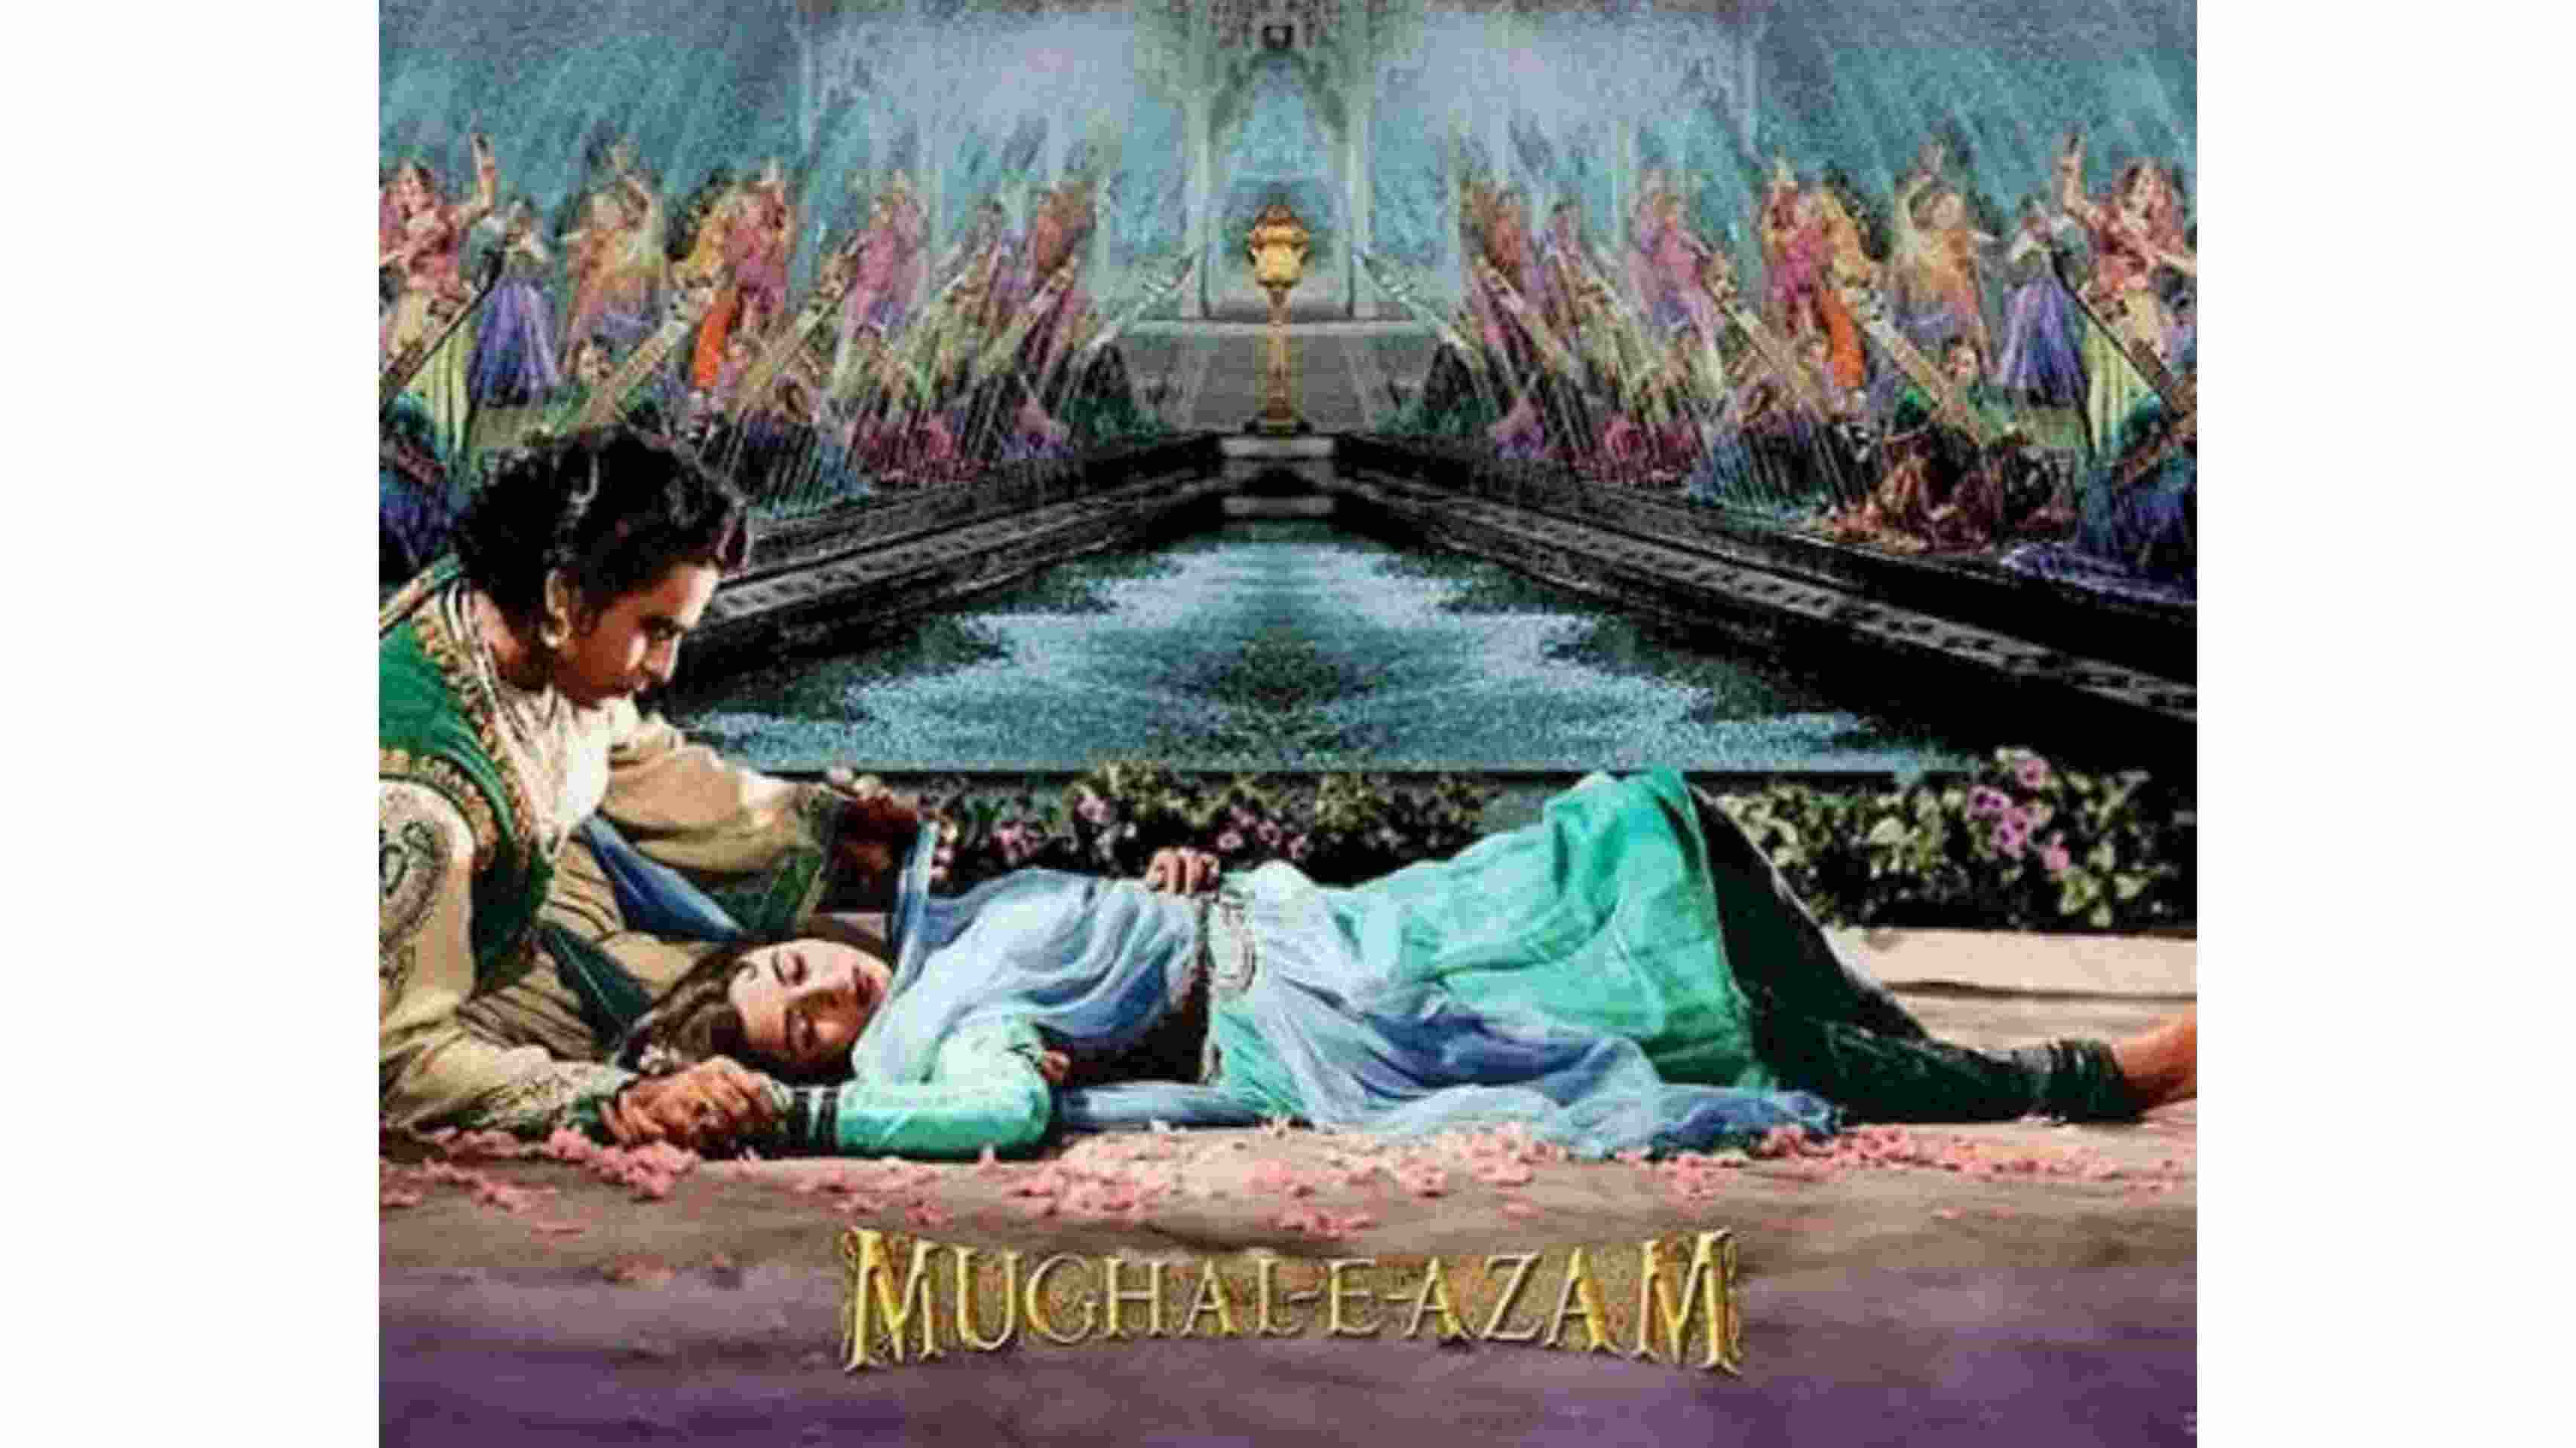 फिल्म ‘मुगल ए आजम’ को आज रिलीज हुए 62 साल हो गए हैं, पढ़िए फिल्म से जुड़े कुछ रोचक किस्से